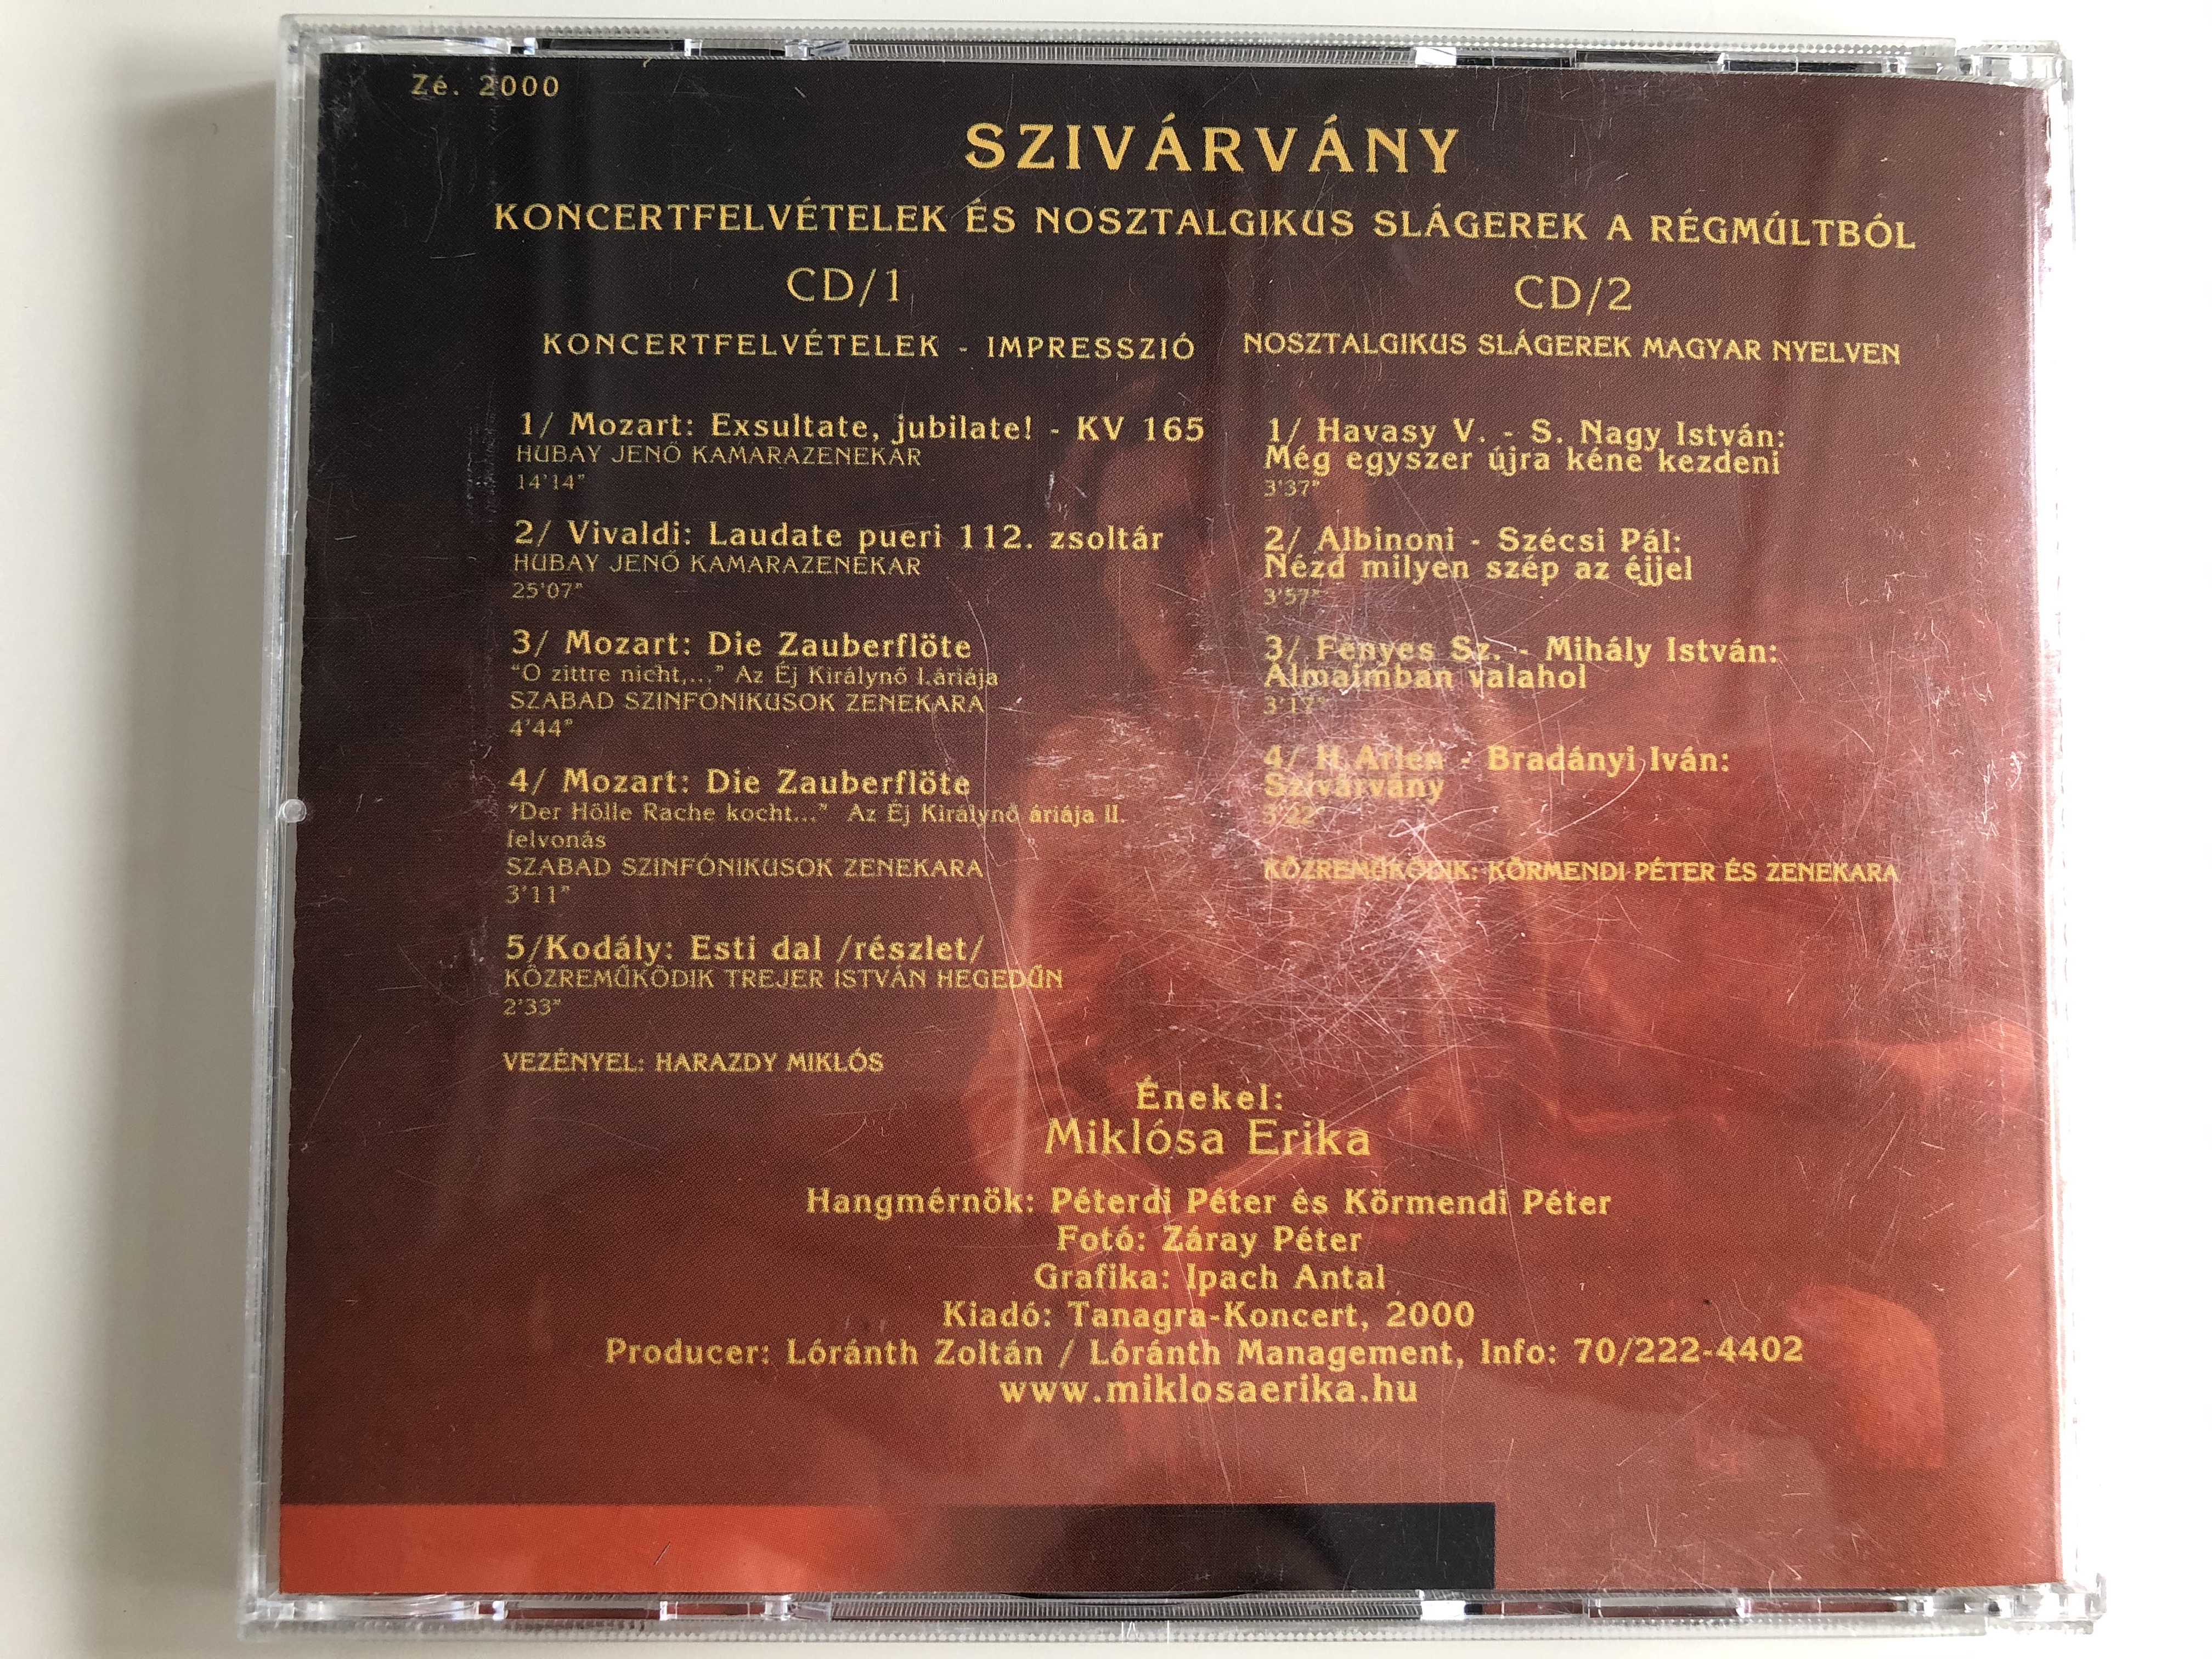 mikl-sa-erika-sziv-rv-ny-koncertfelvetelek-es-nosztalgikus-slagerek-a-regmultbol-tanagra-koncert-bt.-2x-audio-cd-2000-z-2000-7-.jpg